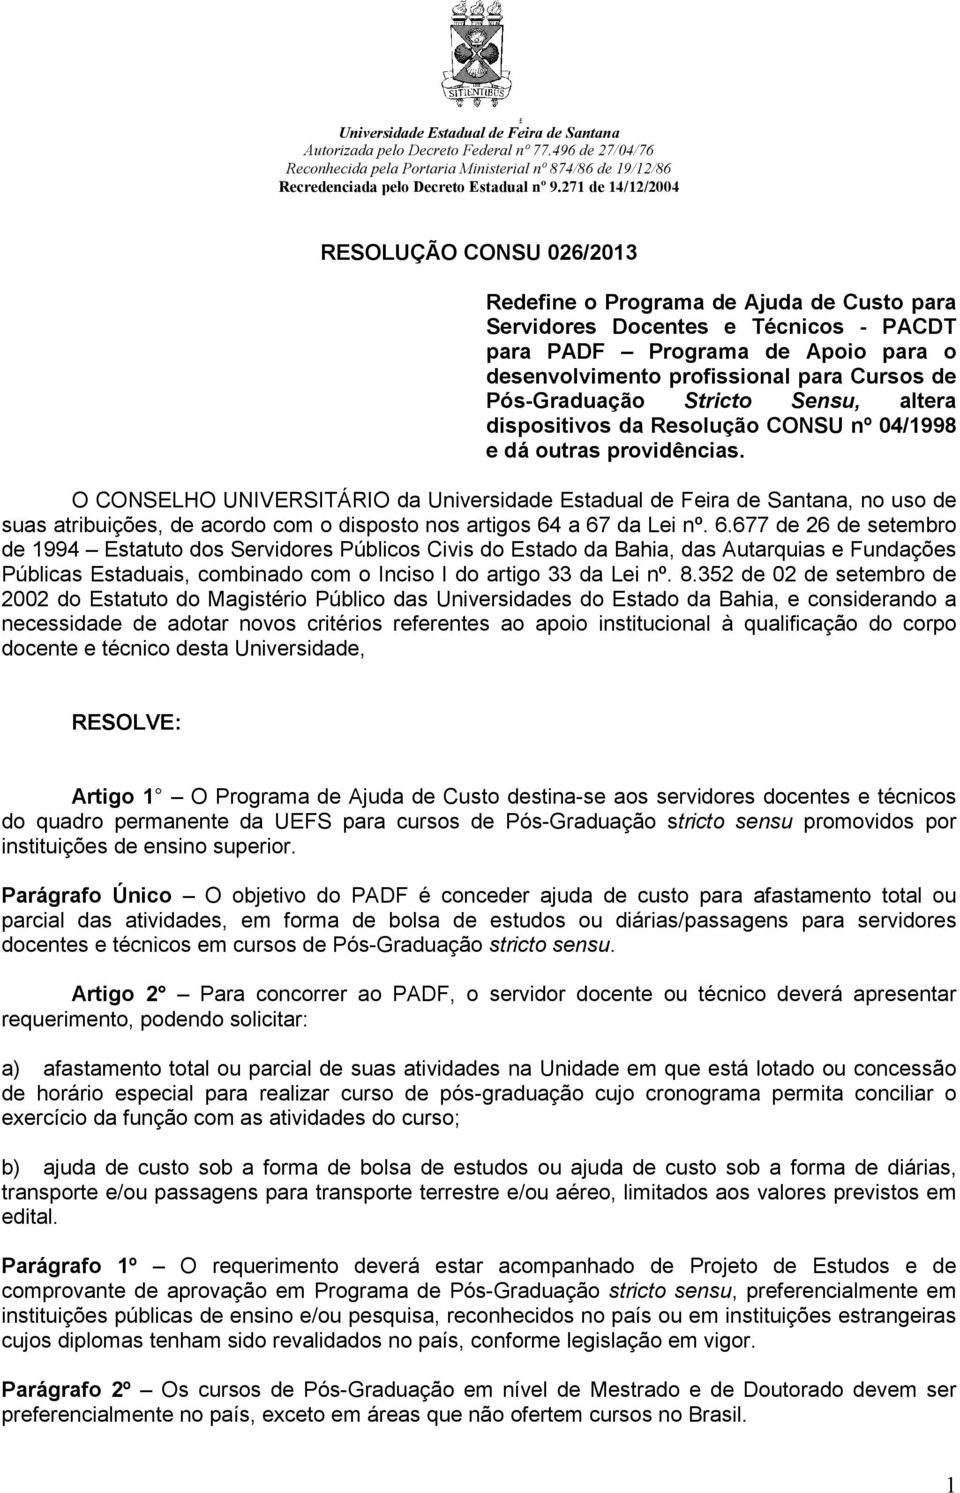 O CONSELHO UNIVERSITÁRIO da Universidade Estadual de Feira de Santana, no uso de suas atribuições, de acordo com o disposto nos artigos 64